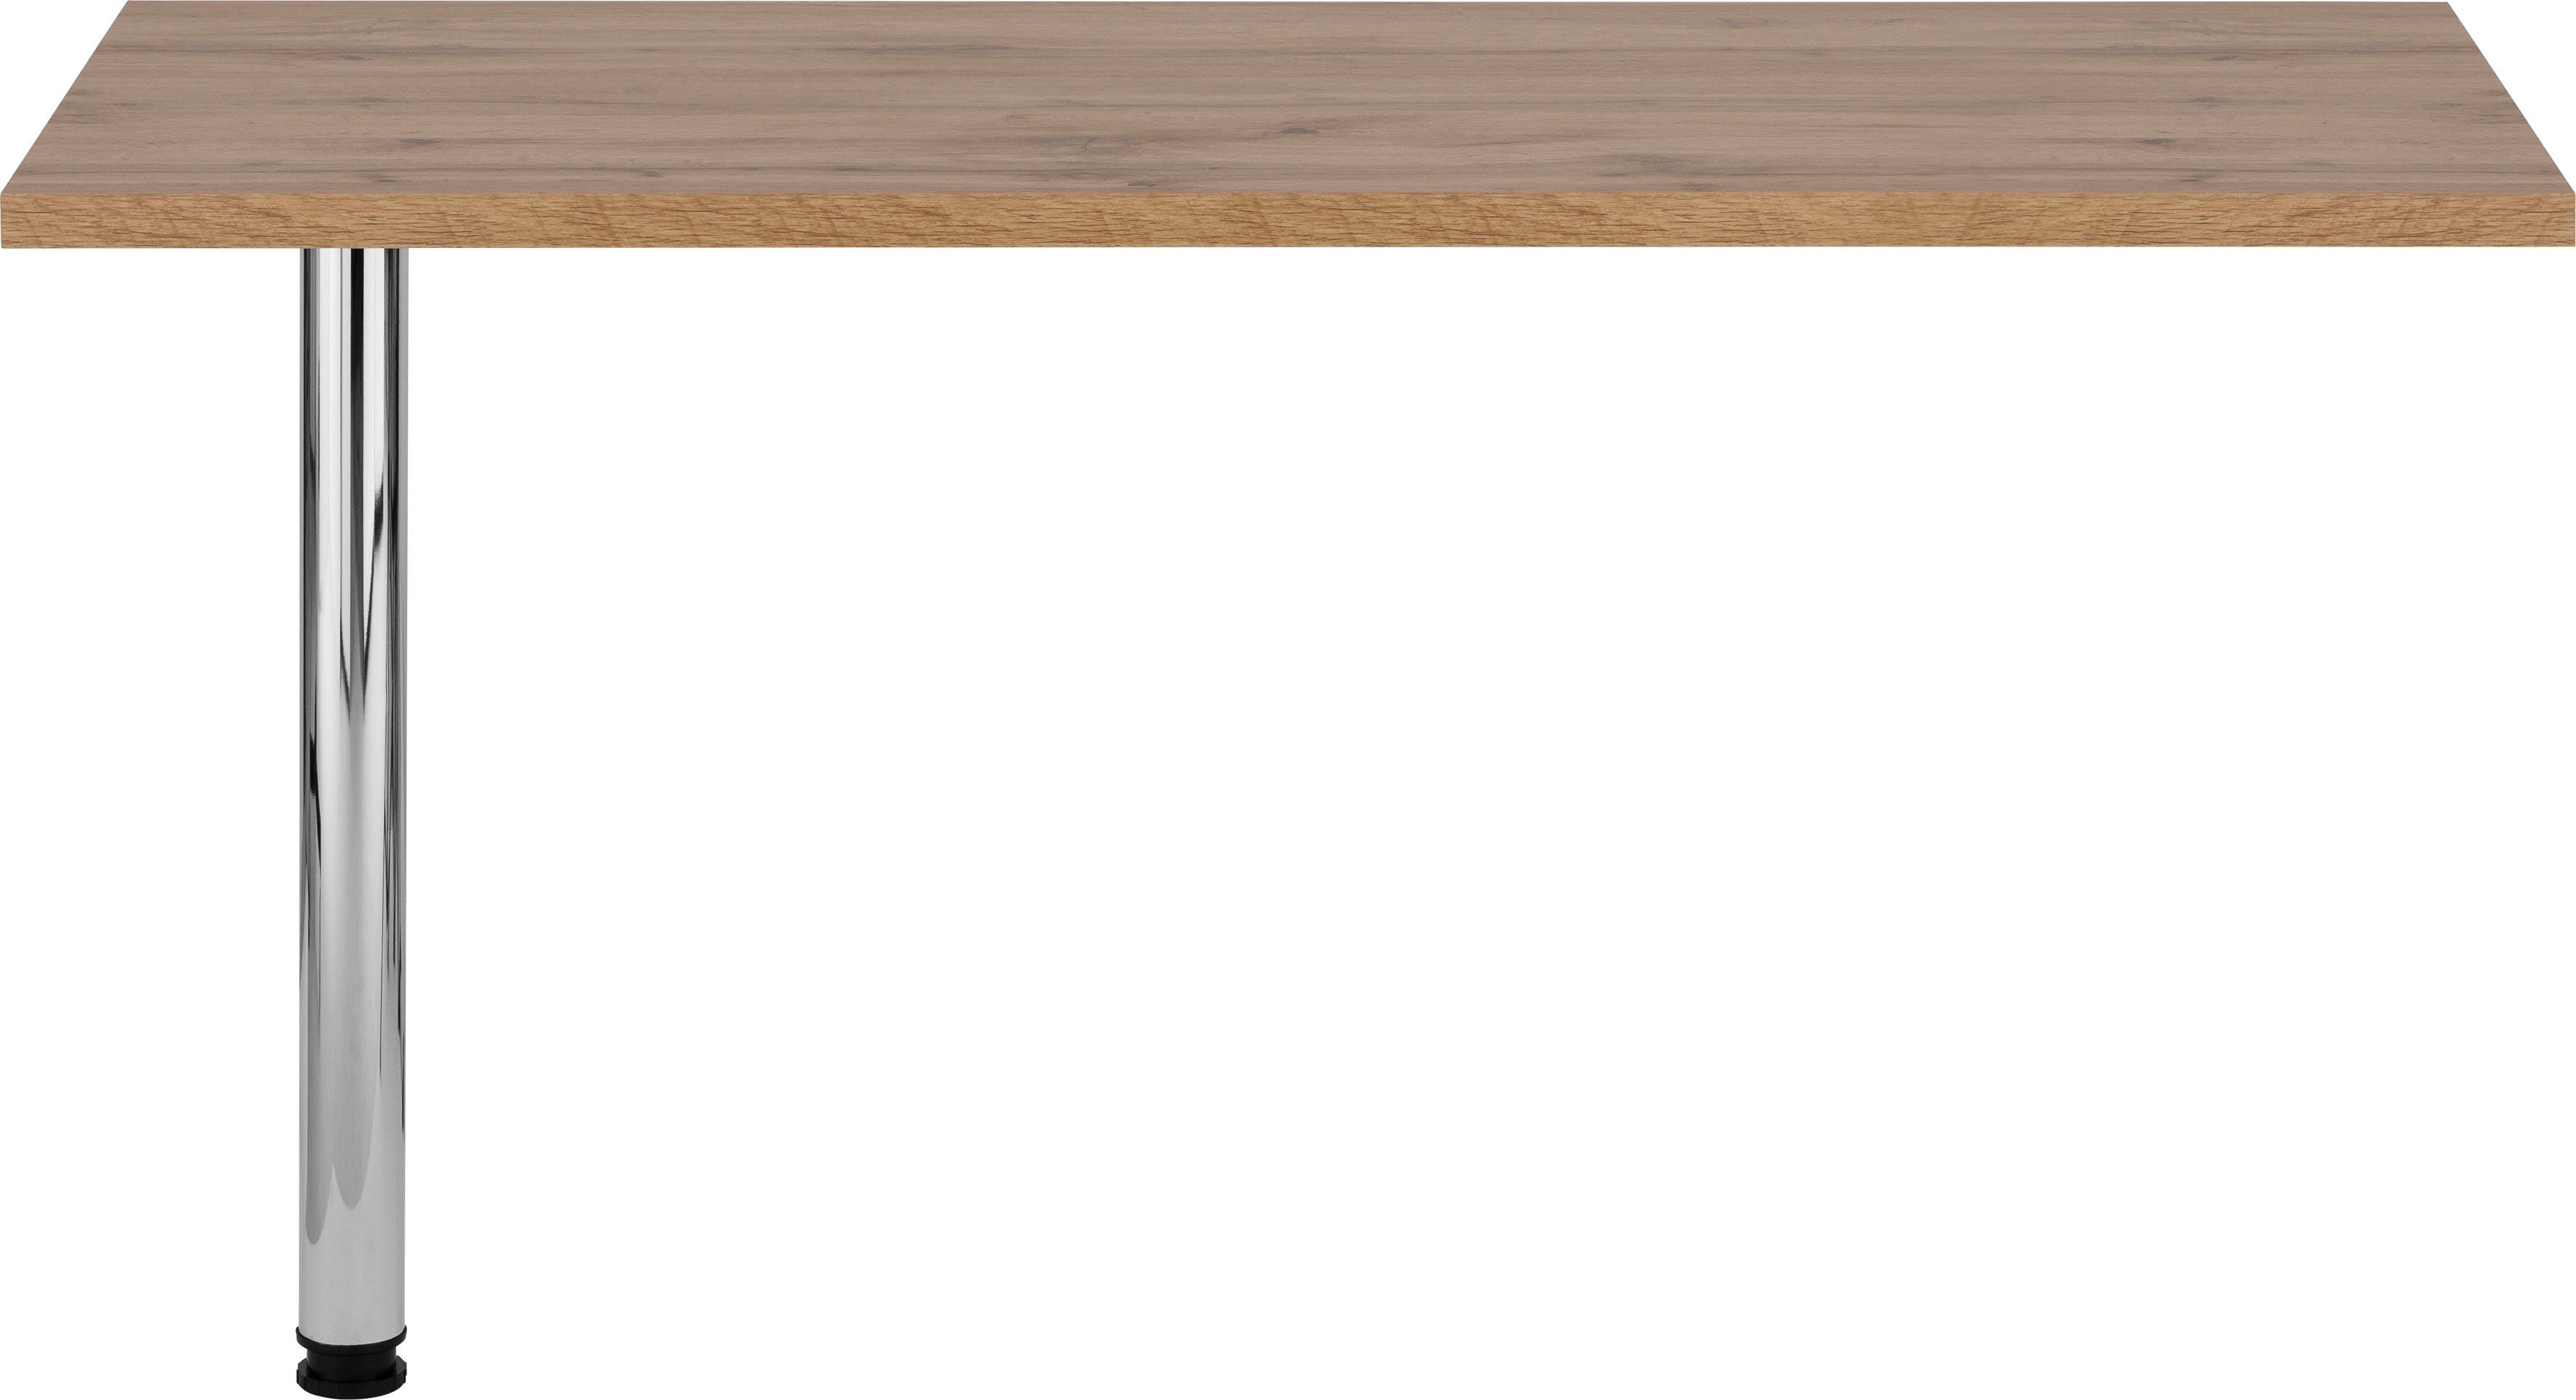 HELD MÖBEL Tresentisch Virginia, 138 cm breit, ideal für kleine Küchen wotaneiche